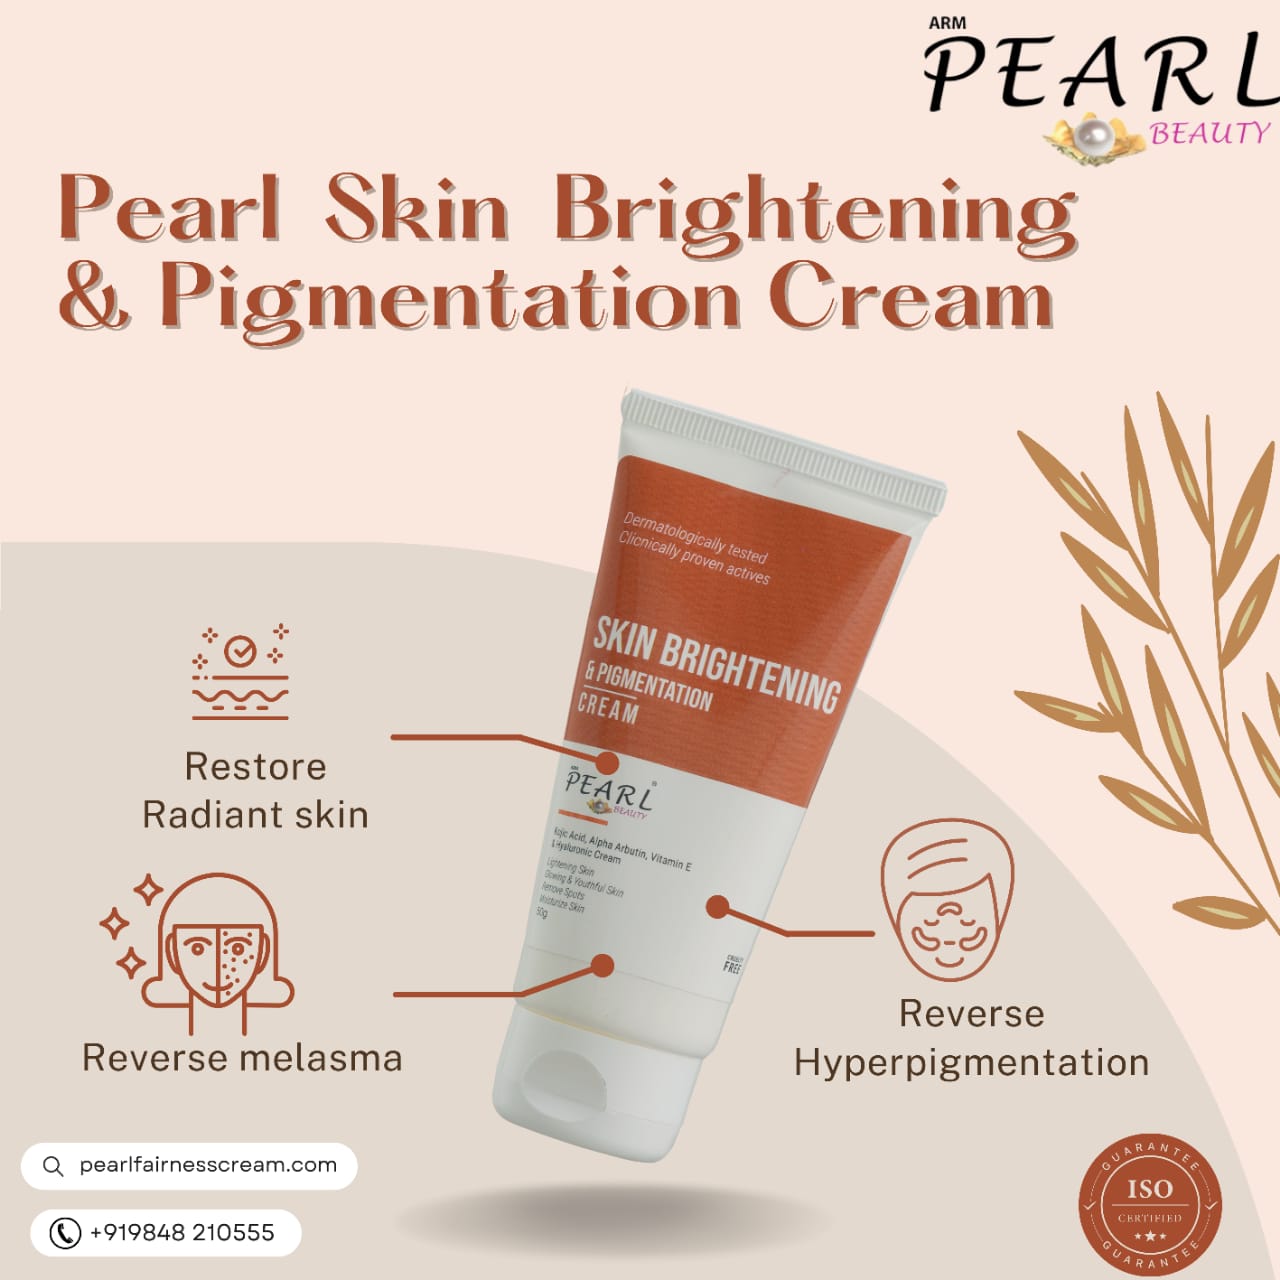 ARM Pearl Skin Brightening & Anti- Pigmentation Cream